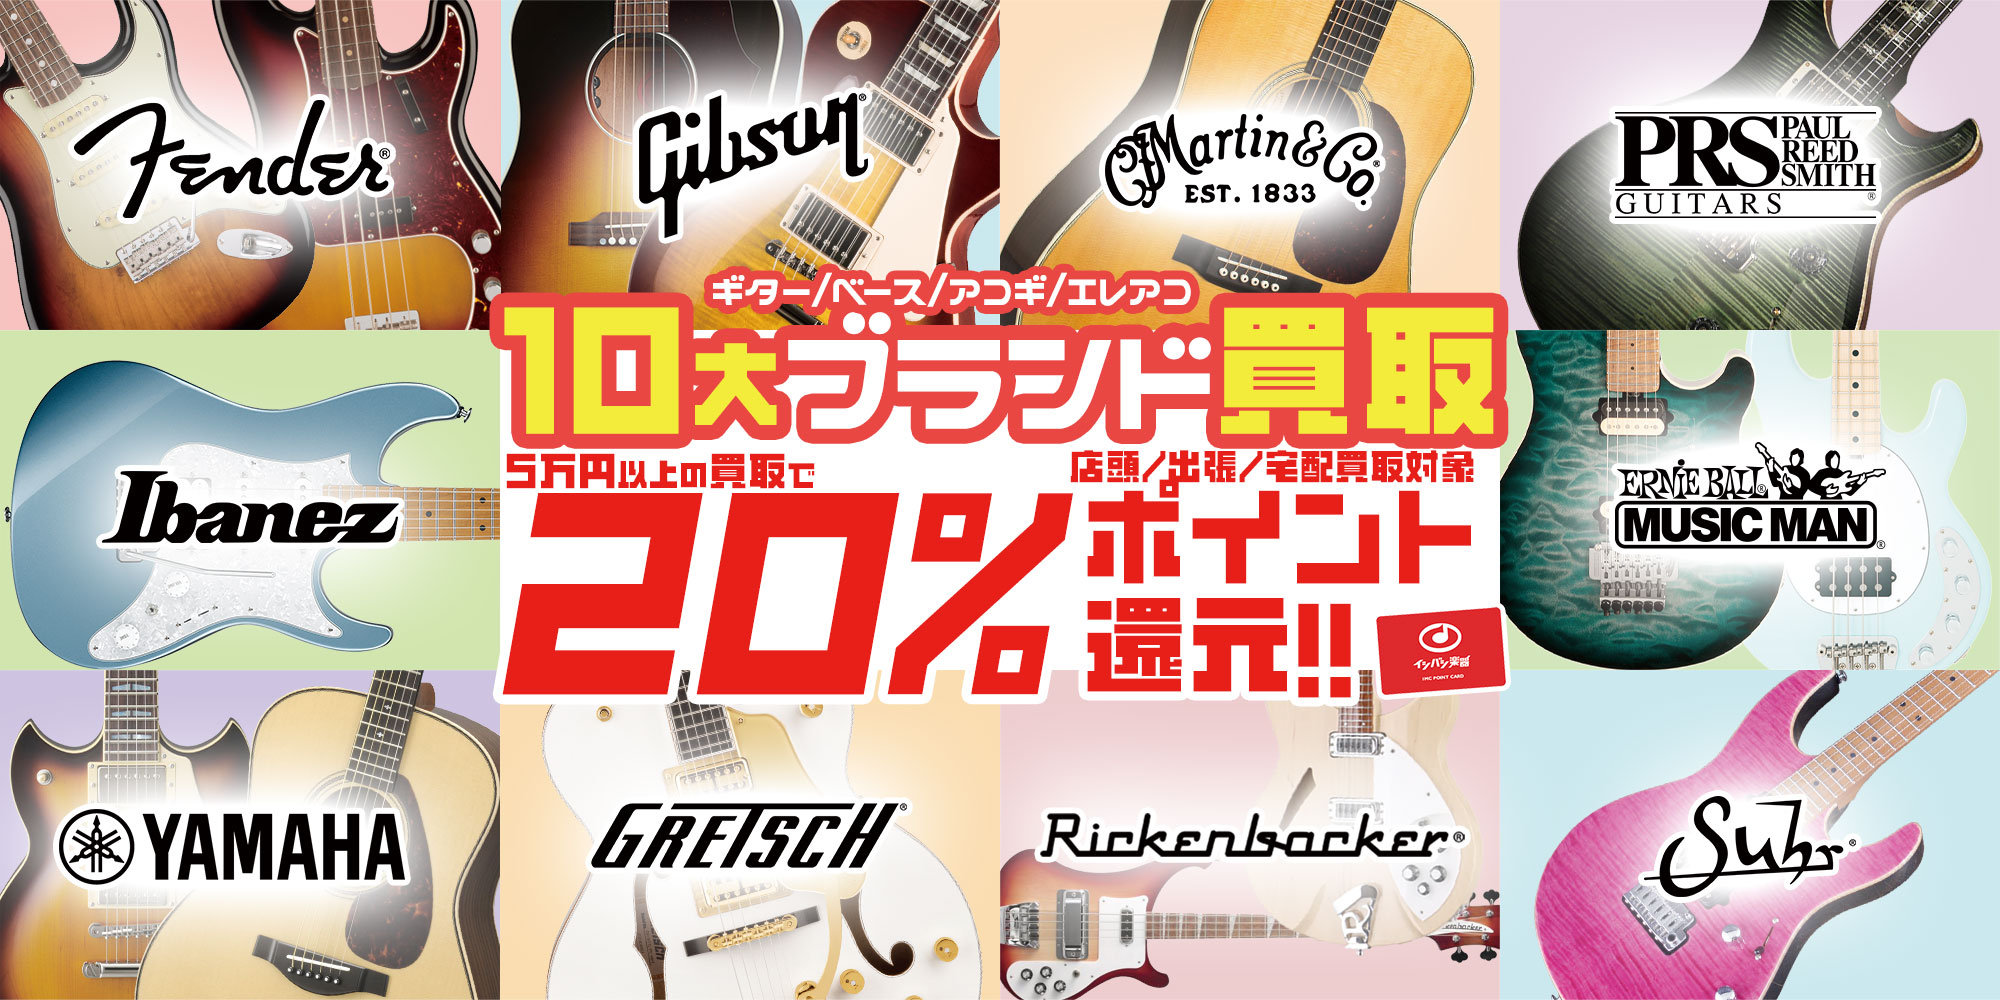 ギター・ベース・アコギ 10大ブランド買取20%ポイント還元!!